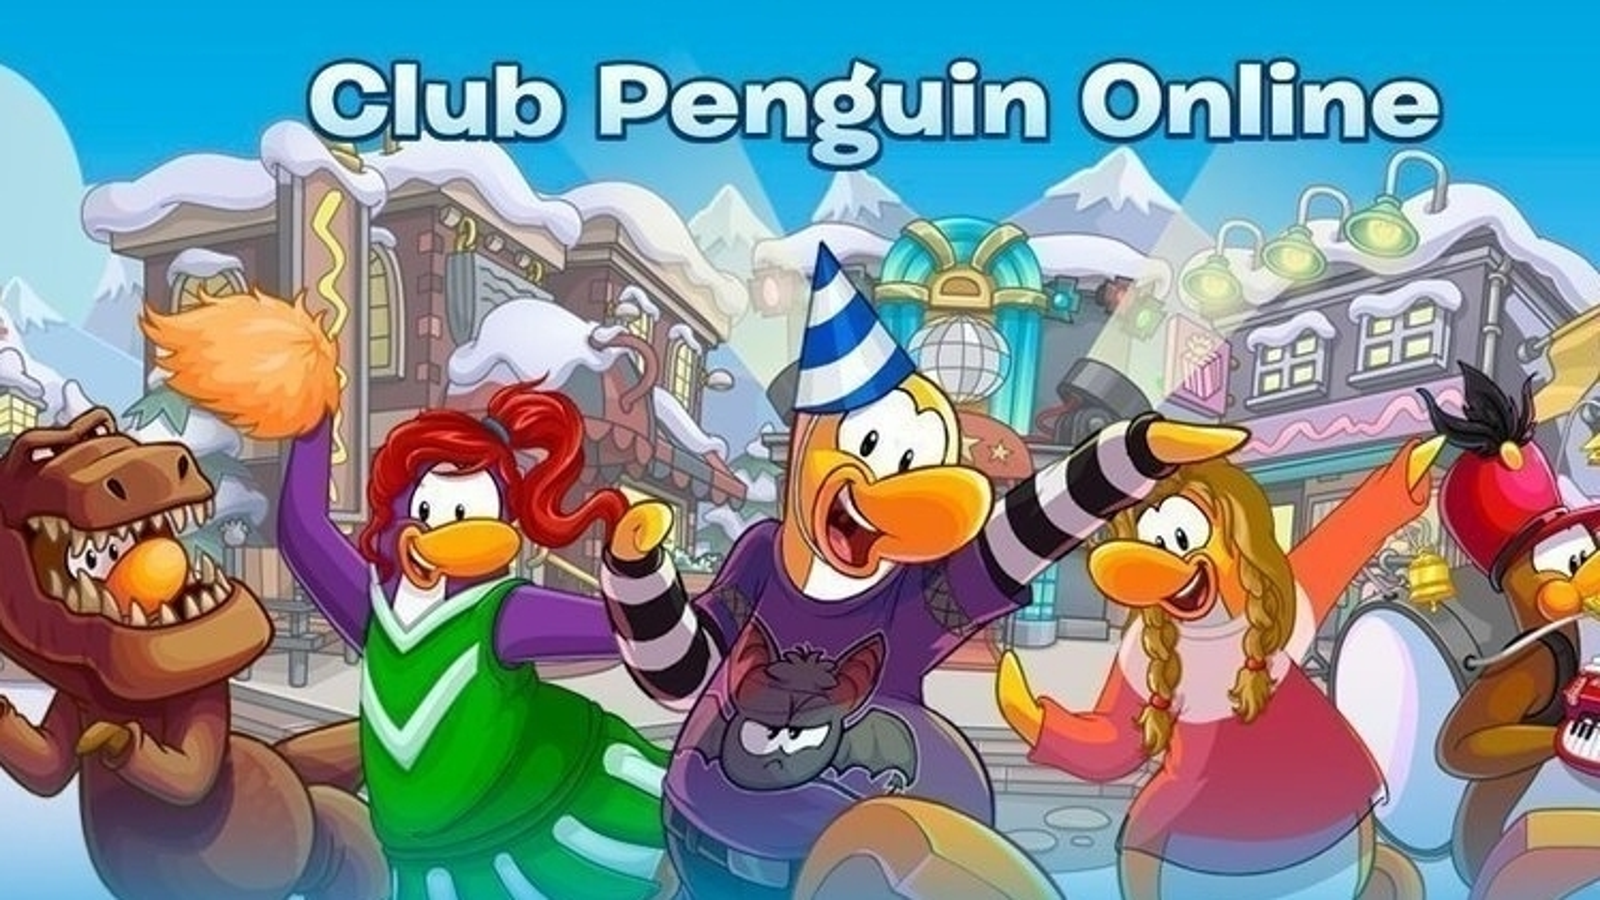 Topic · Club penguin ·